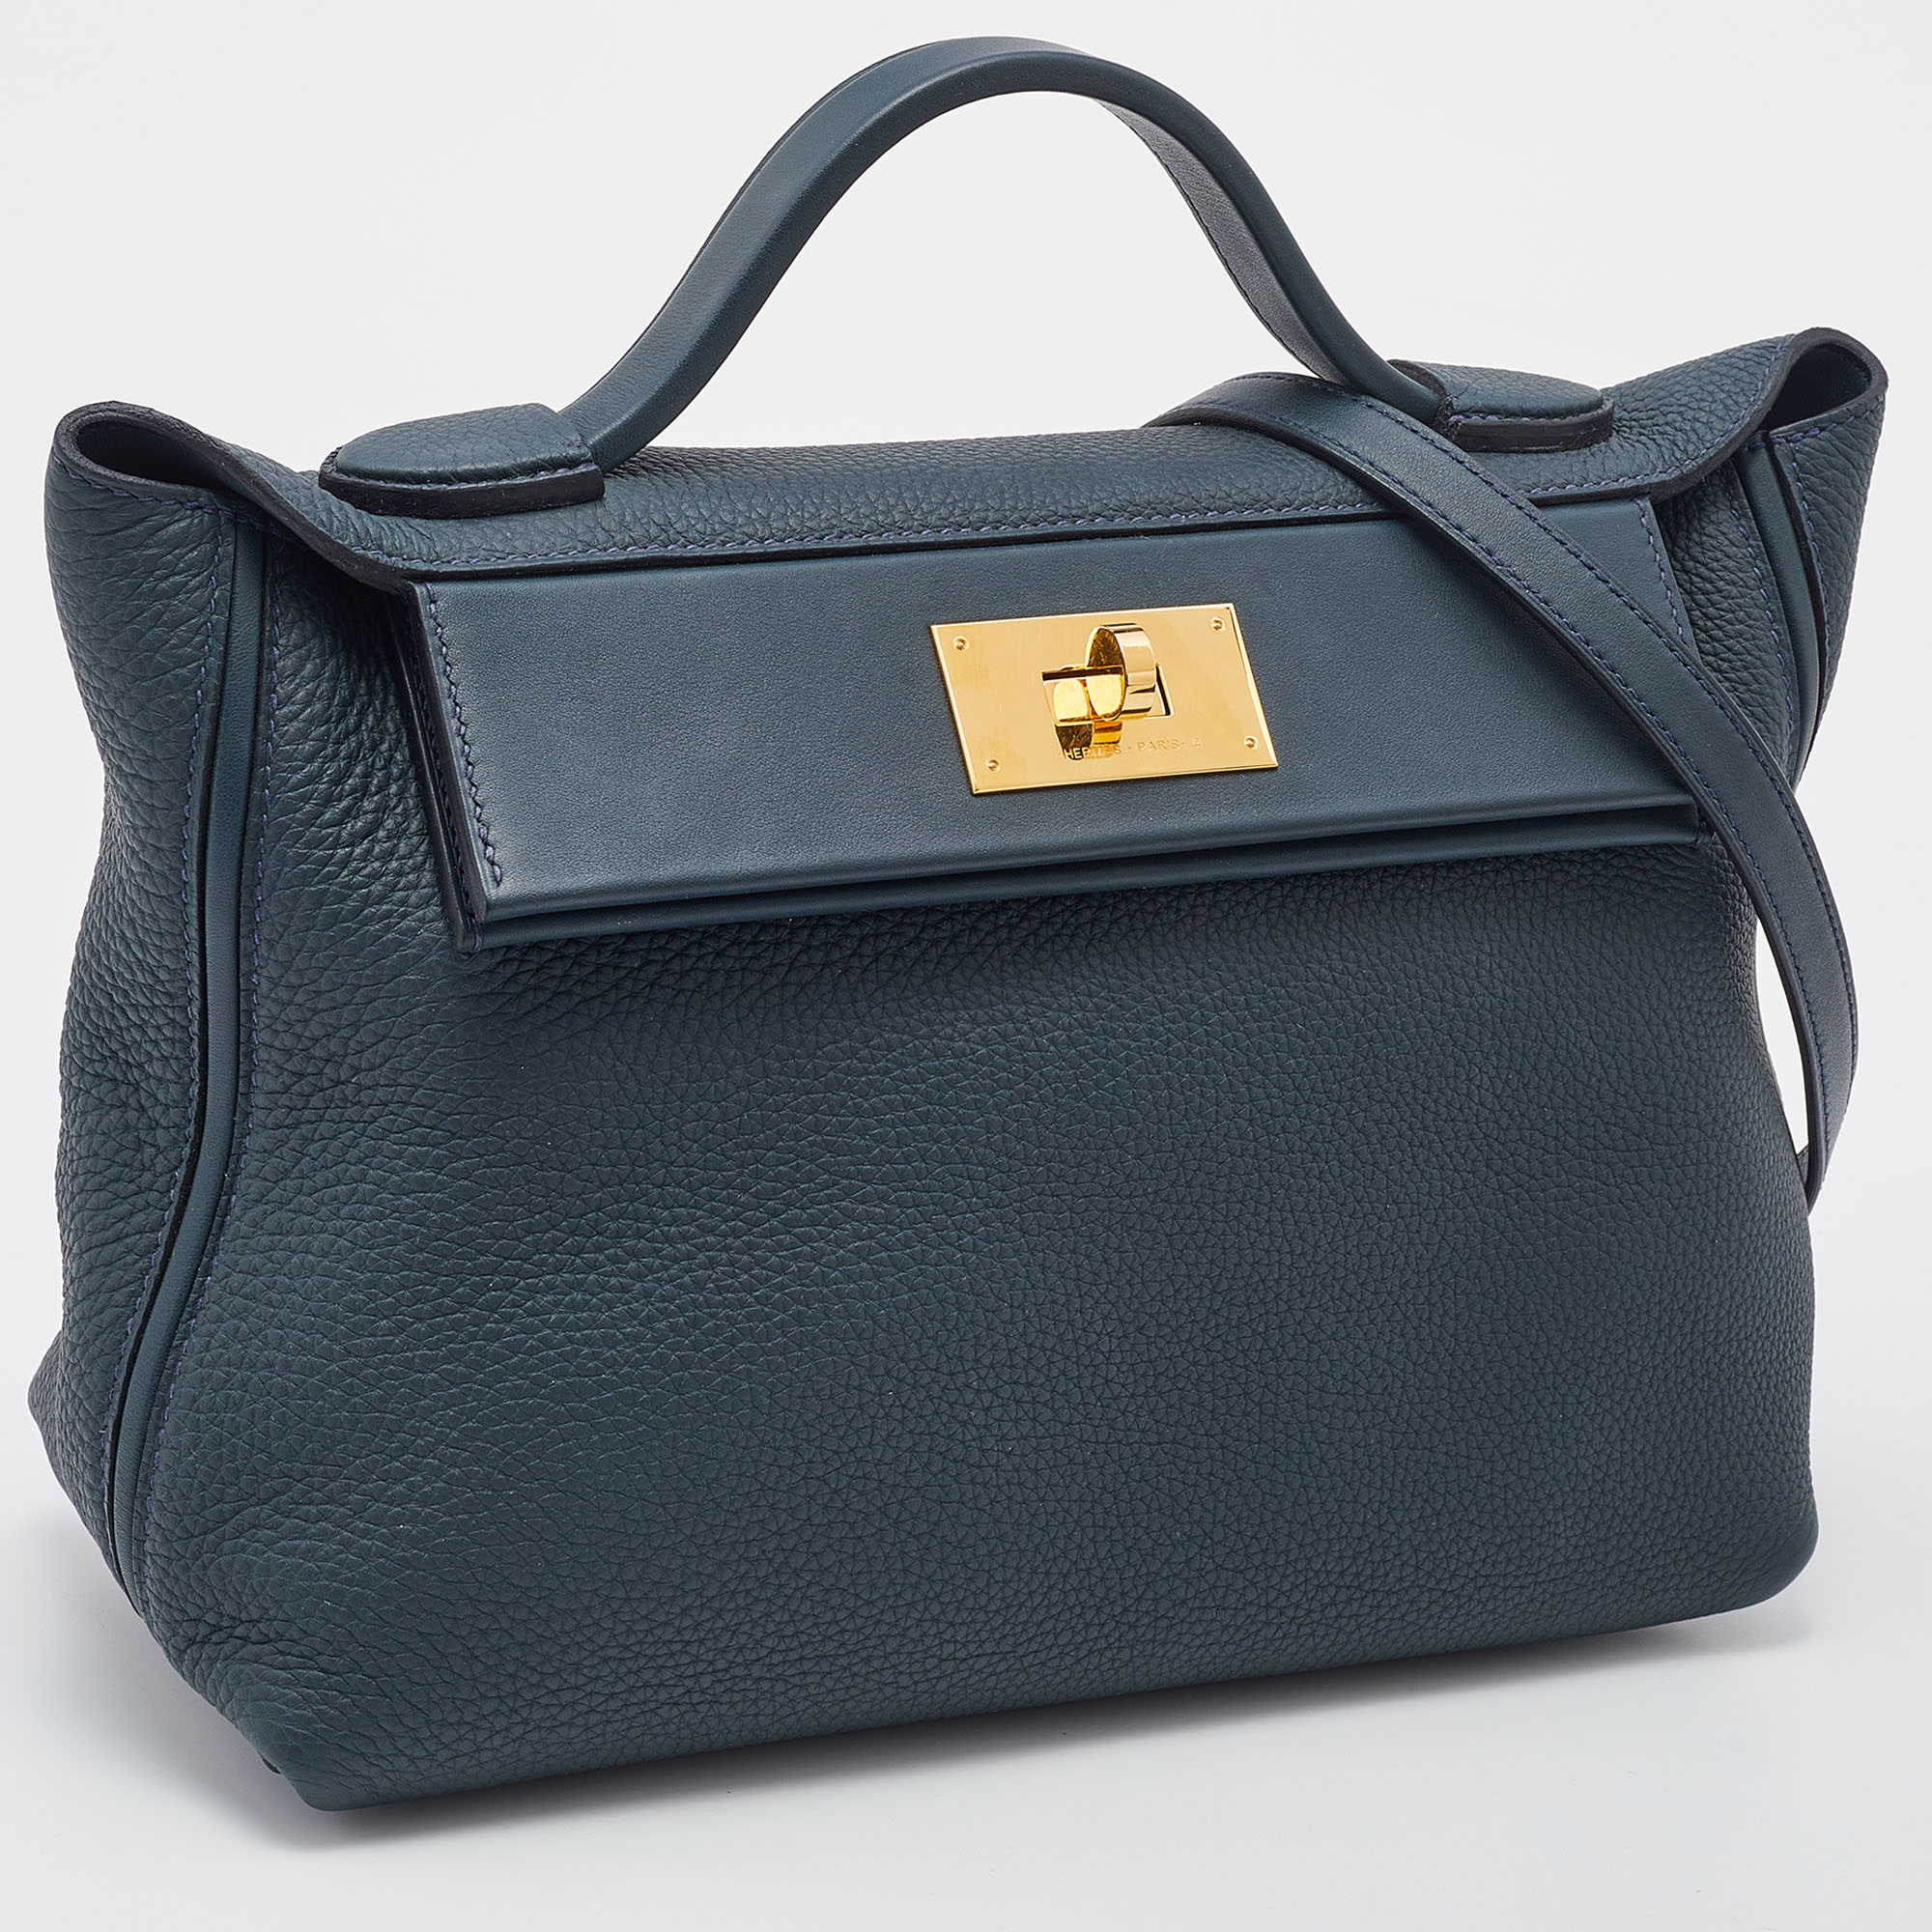 HERMÈS Birkin 25 handbag in Vert Cypress Togo leather with Gold